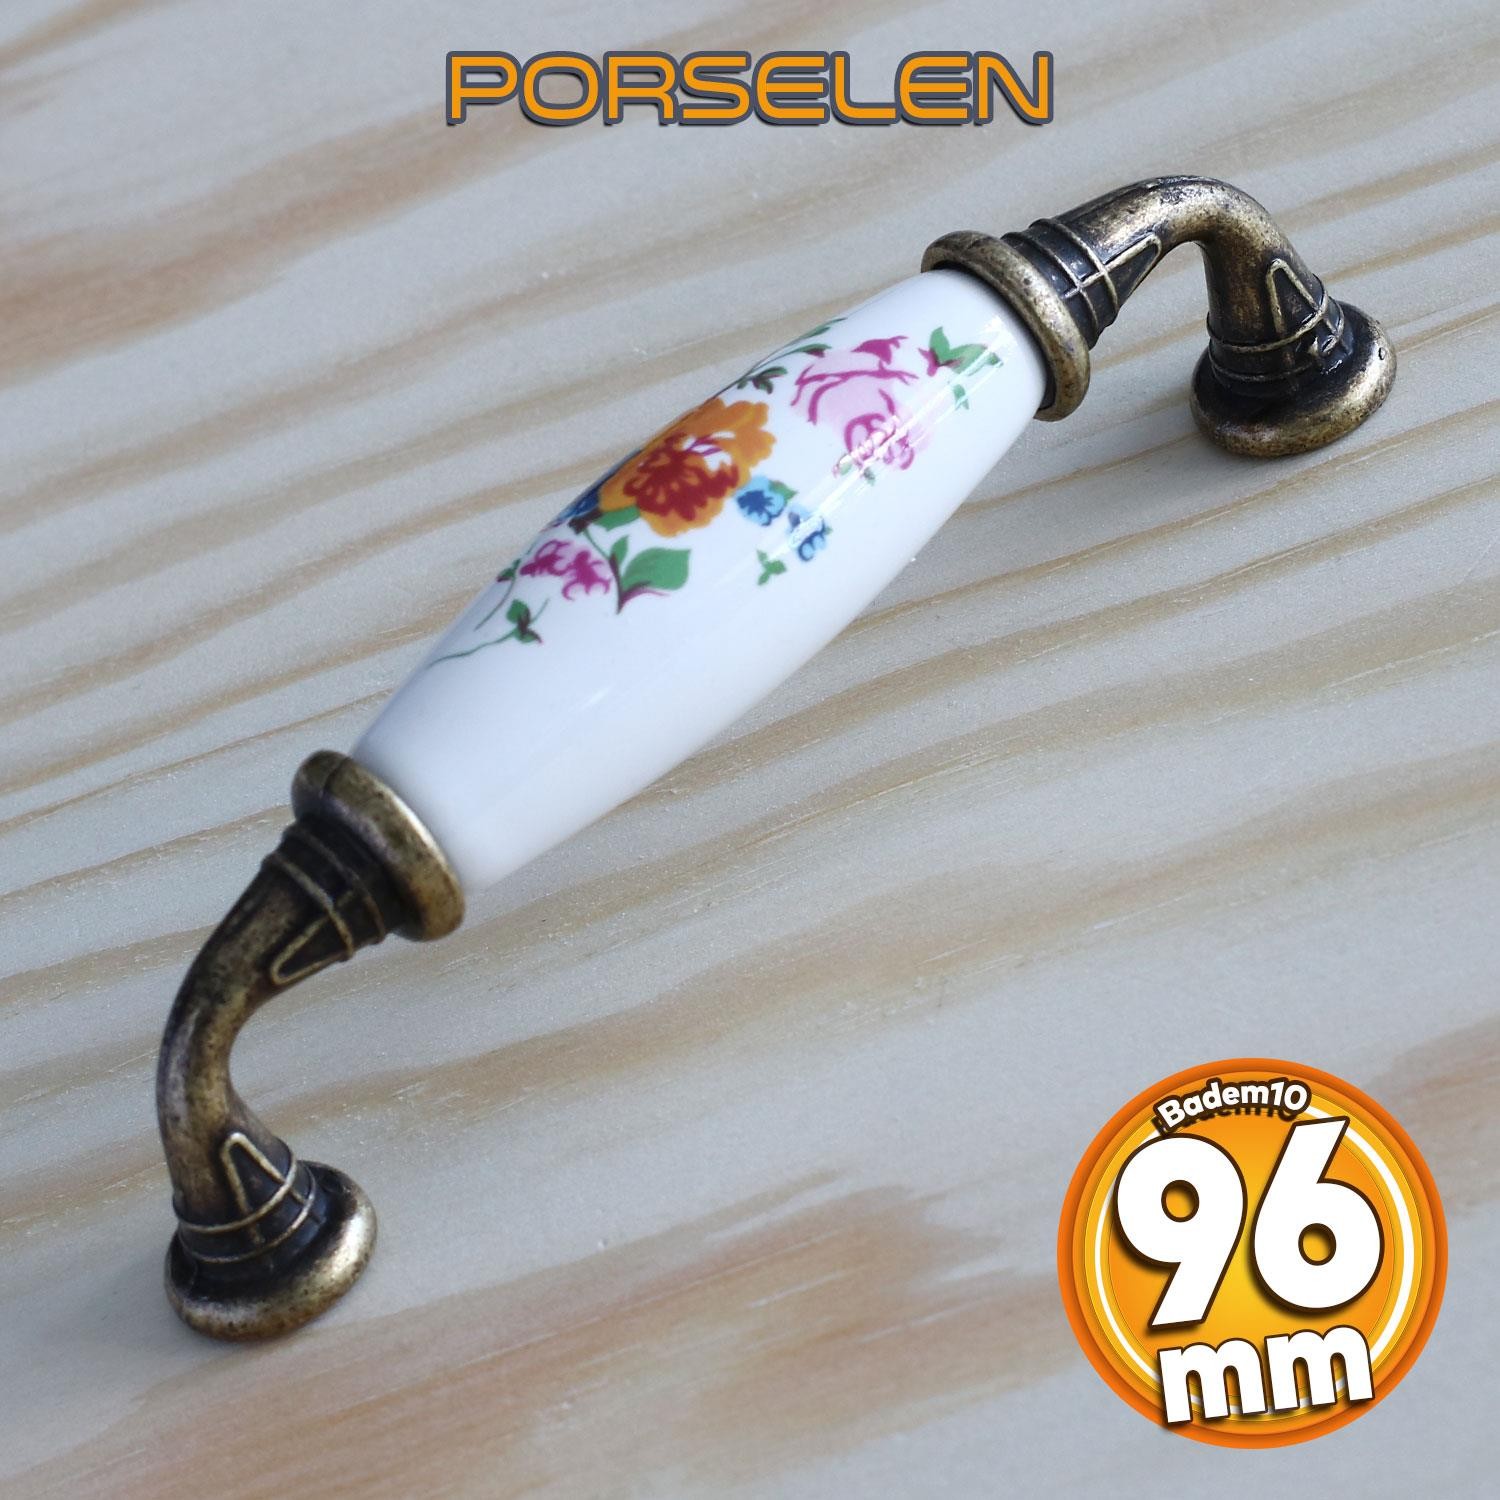 Gerçek Porselen Kulp Çiçek Desen Beyaz 96 mm Mobilya Mutfak Kulplar Dolabı Çekmece Dolap Kapak Kulpu